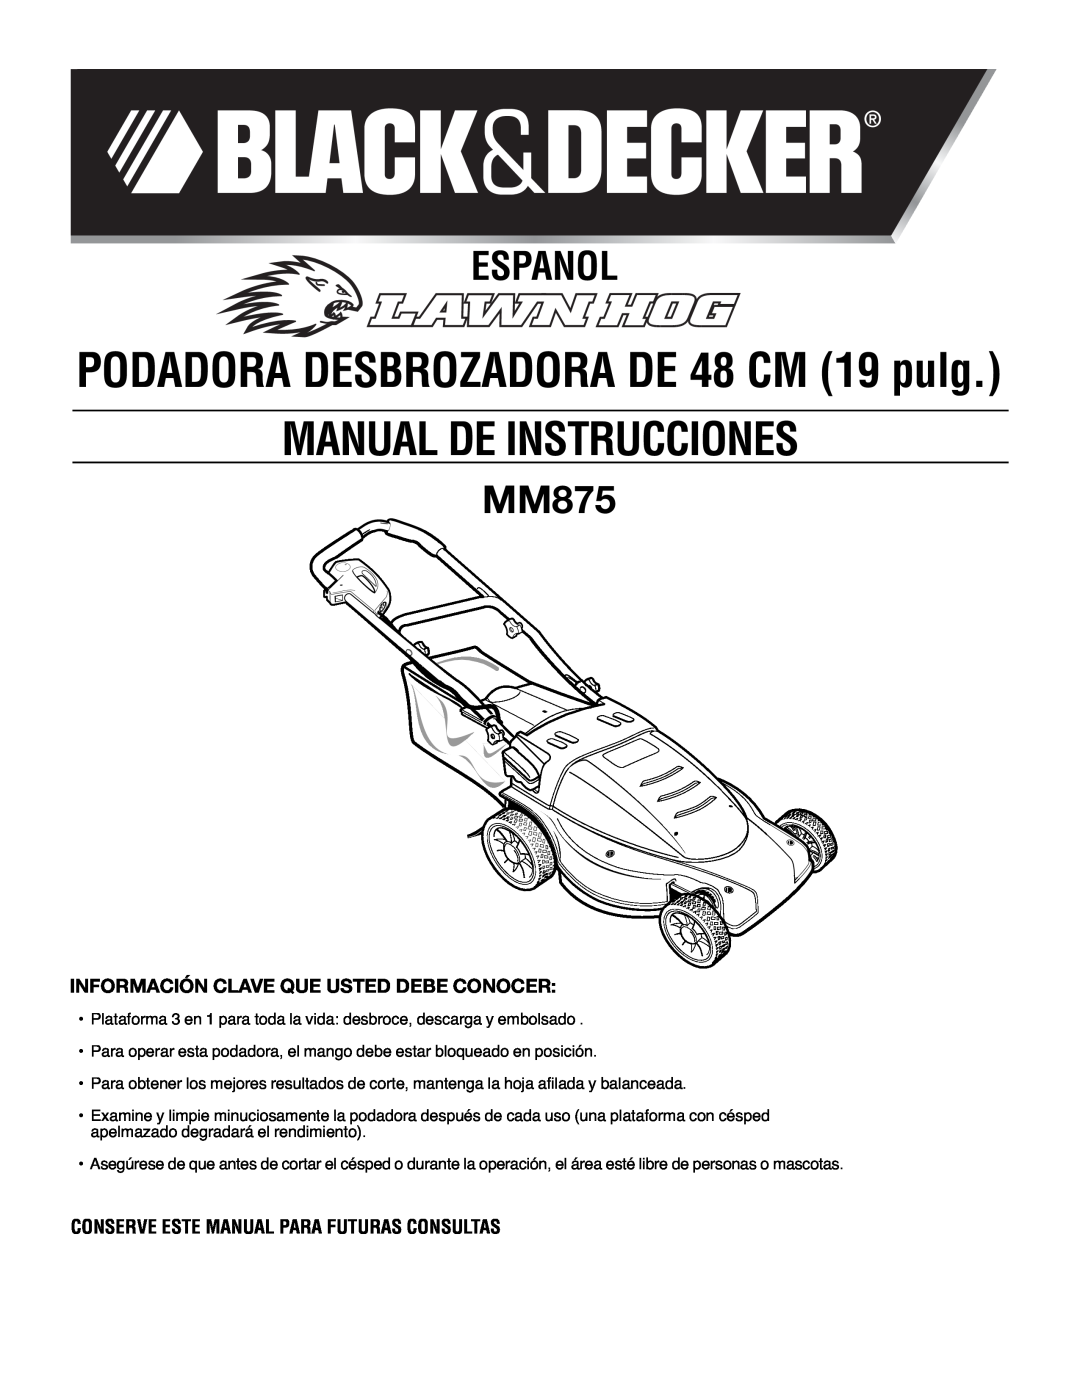 Black & Decker MM875 Español, Información Clave Que Usted Debe Conocer, Conserve Este Manual Para Futuras Consultas 